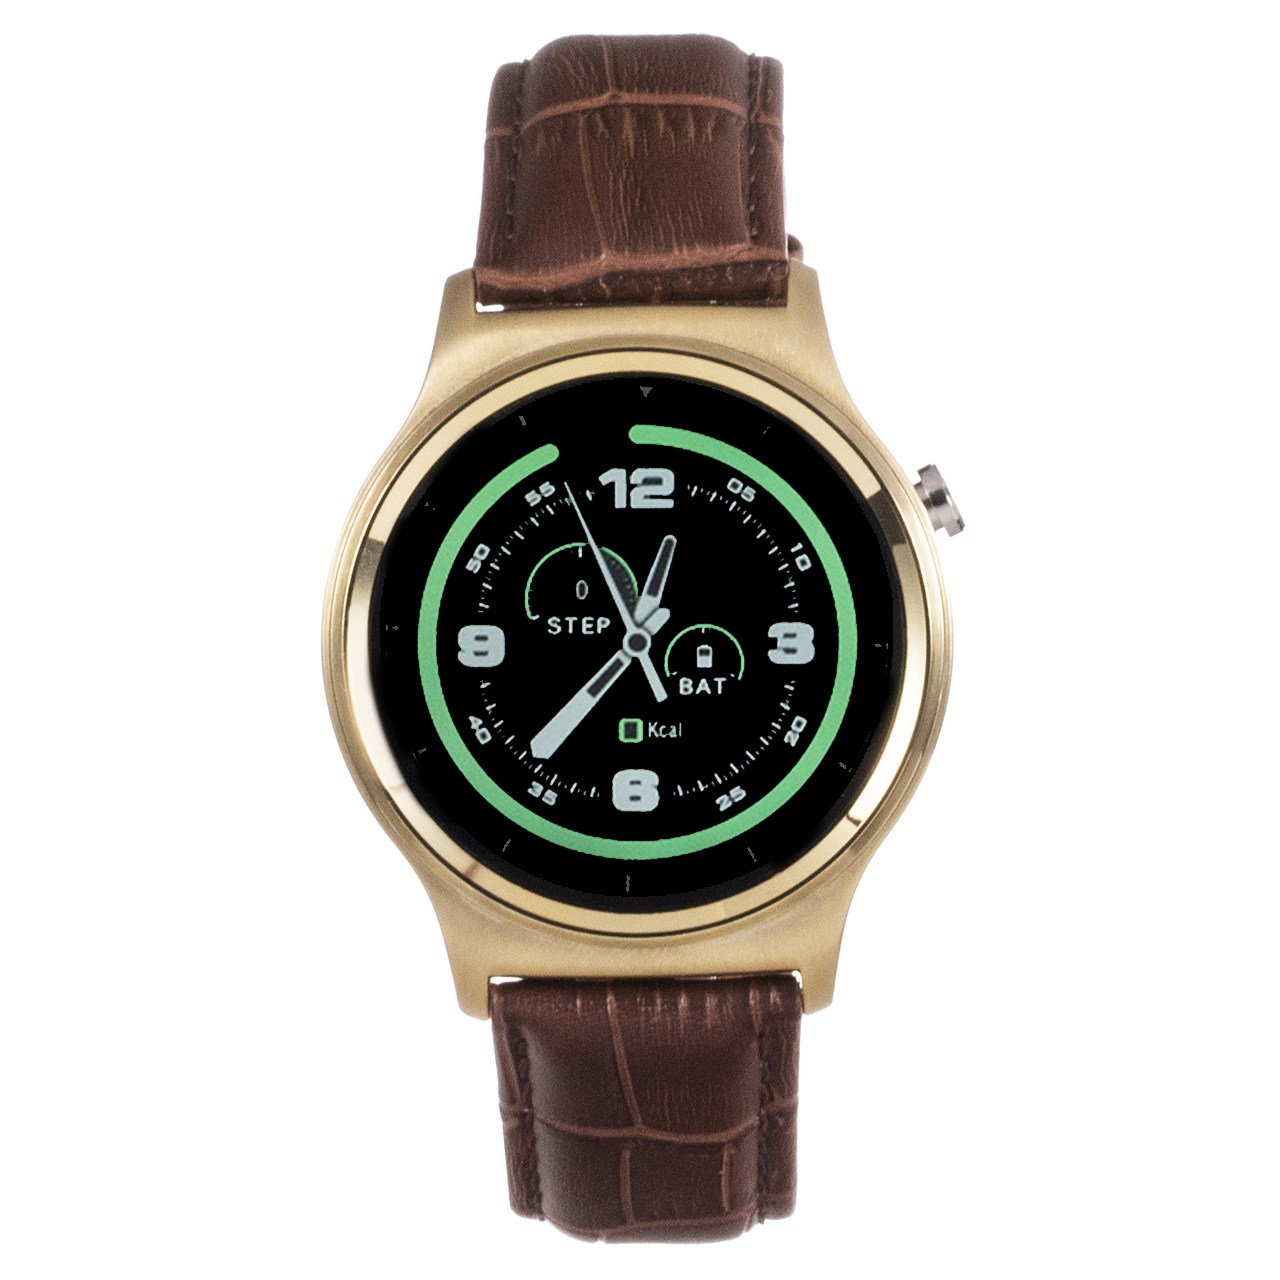 ساعت هوشمند تی تی وای جی موو مدل GW01 gold with brown leather strap